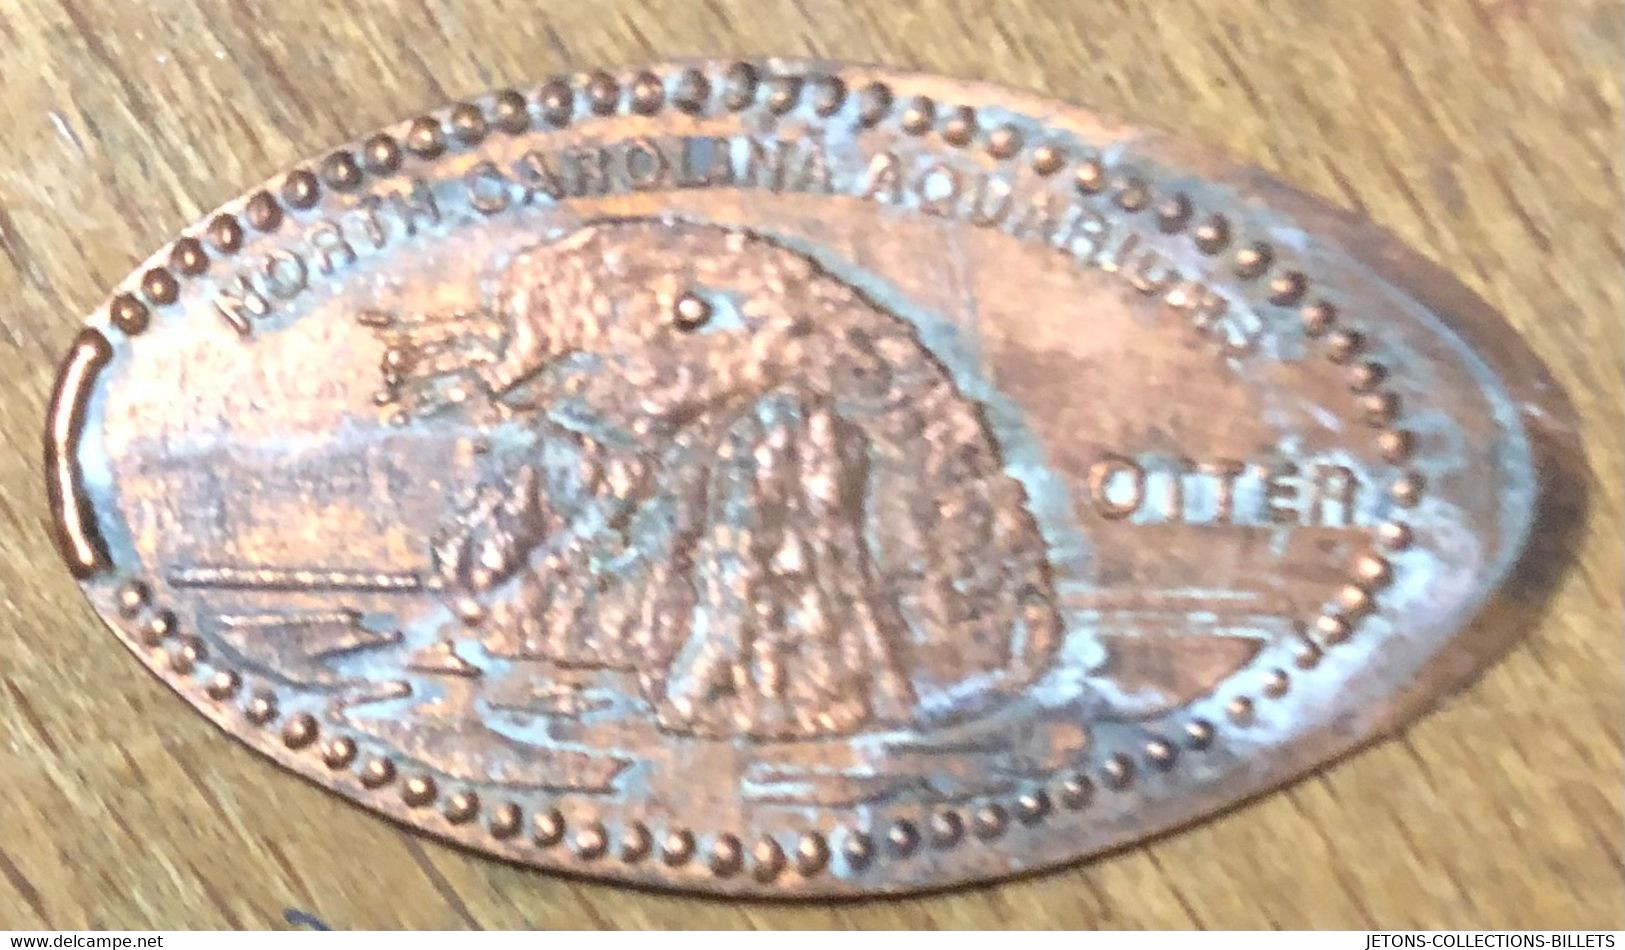 ÉTATS-UNIS USA NORTH CAROLINA AQUARIUMS OTTER PIÈCE ÉCRASÉE PENNY ELONGATED COIN MEDAILLE TOURISTIQUE MEDALS TOKENS - Souvenir-Medaille (elongated Coins)